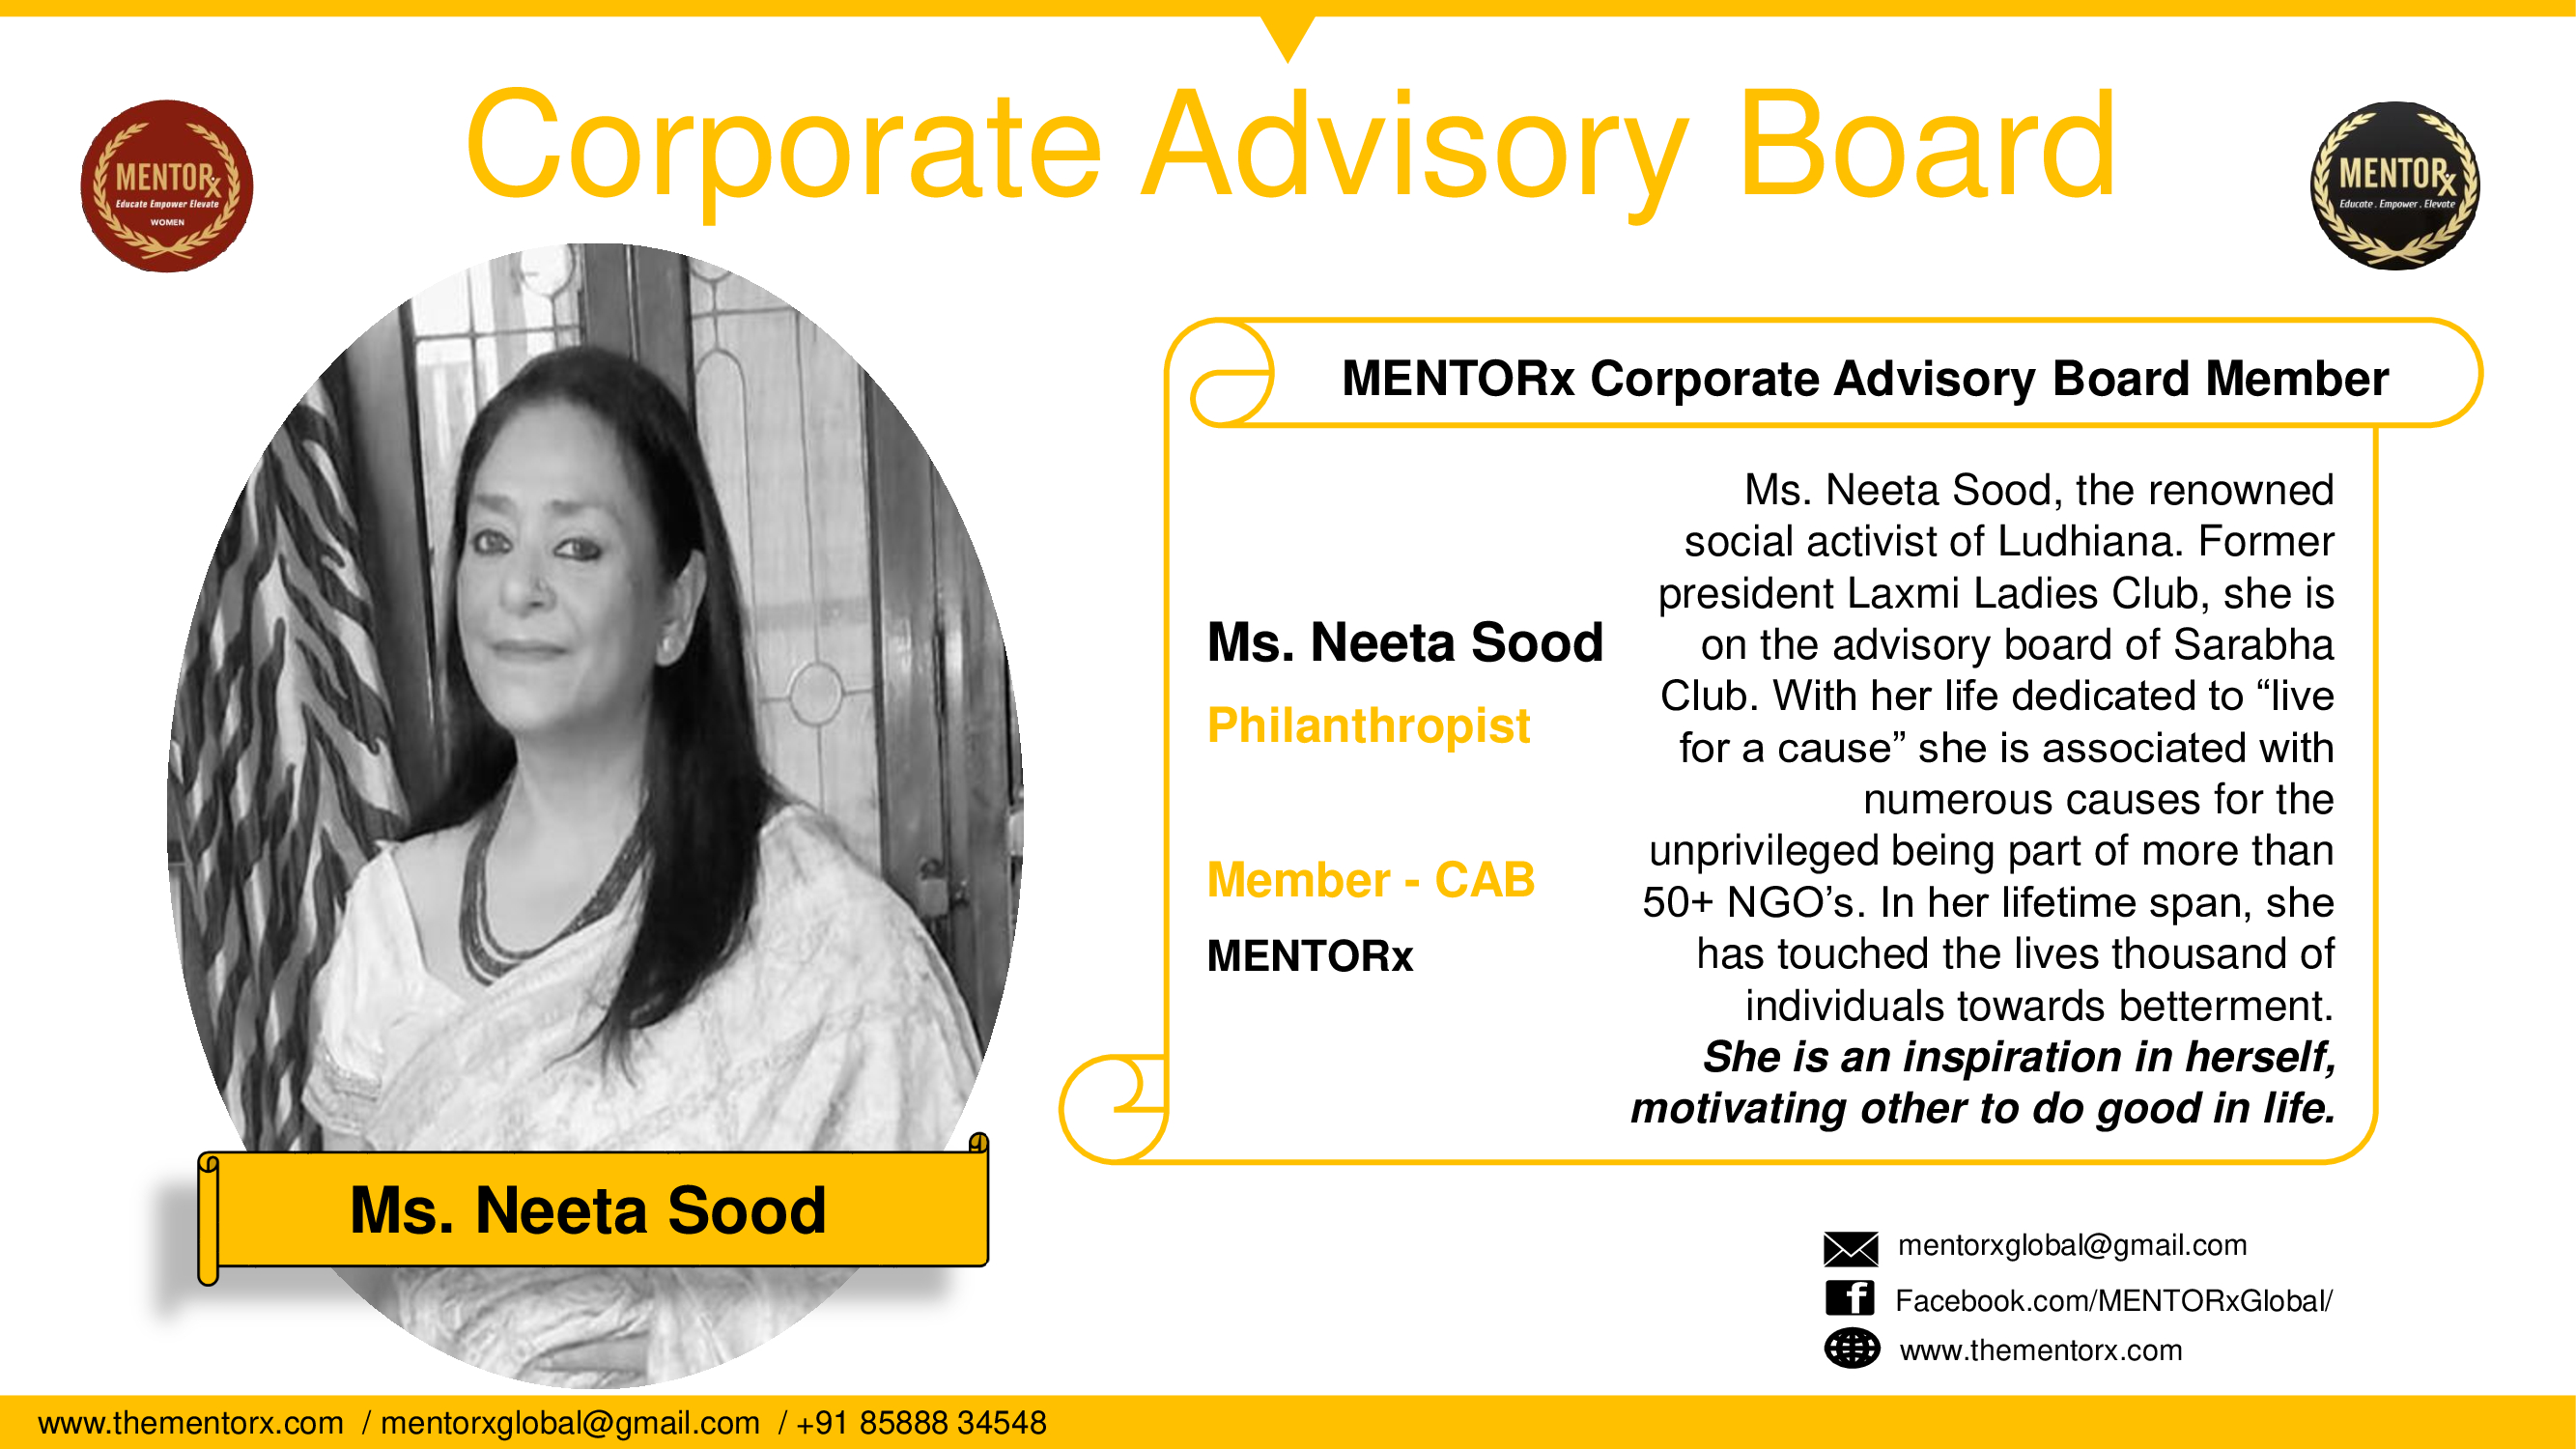 MENTORx - Ms. Neeta Sood - CAB